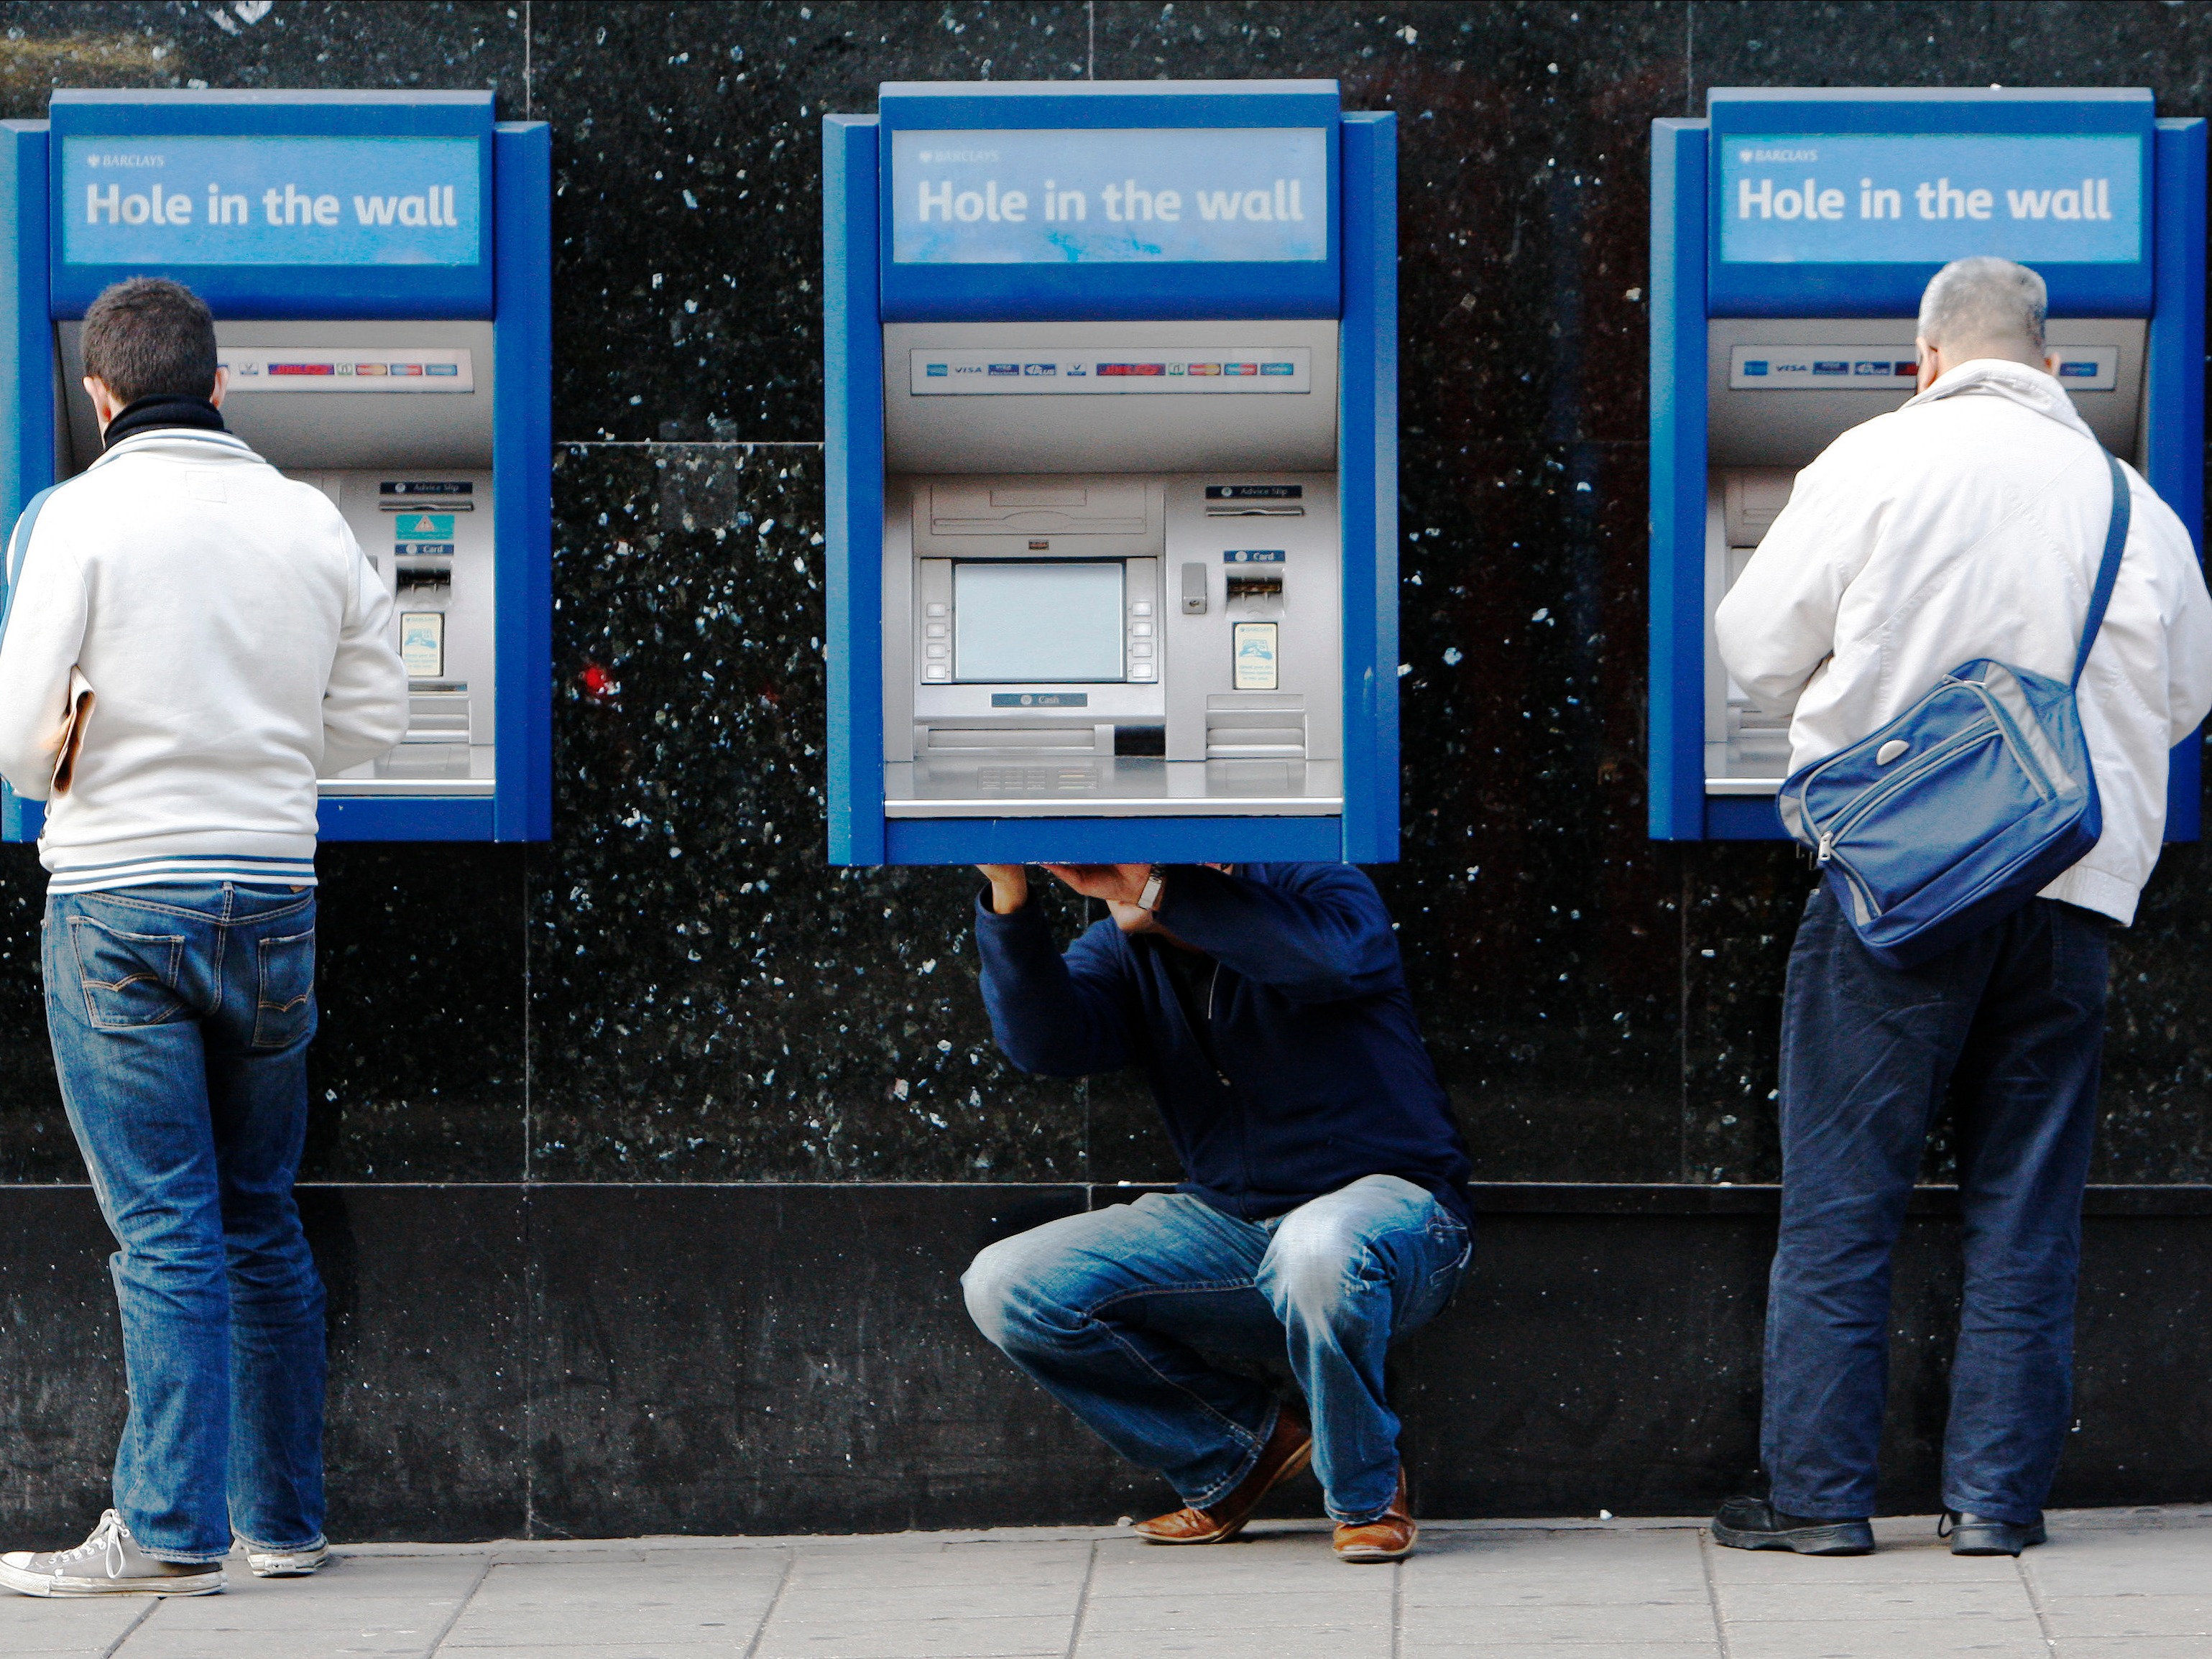 Люди активно используют банкоматы в повседневной жизни